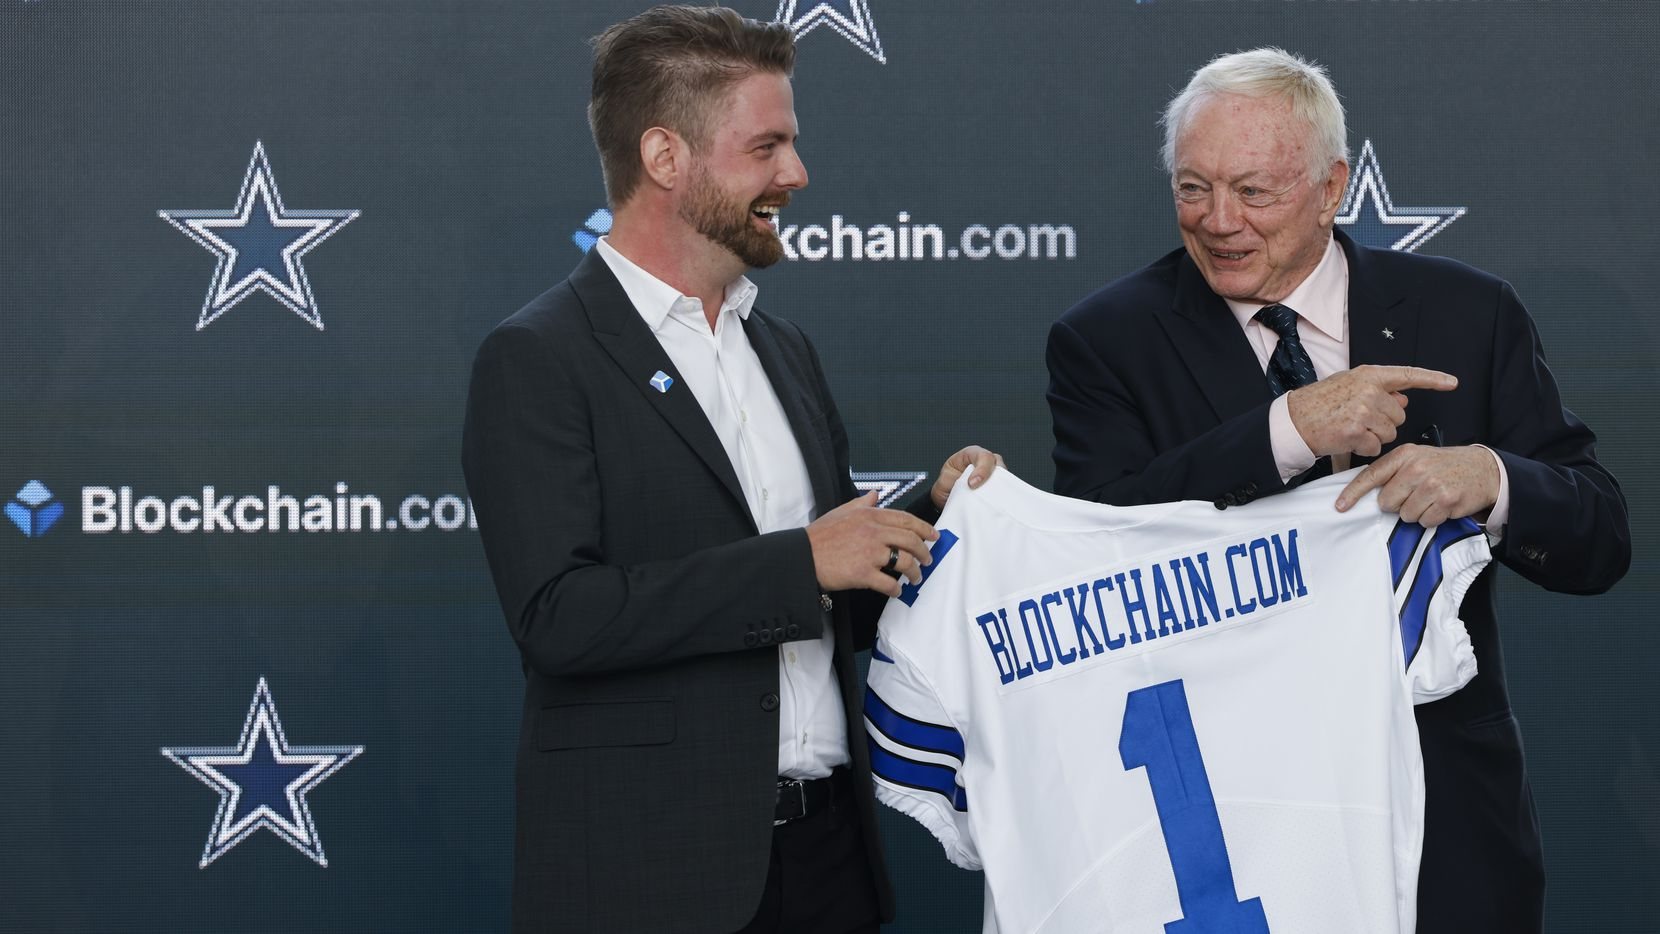 Acordo de tinta do Dallas Cowboys com Blockchain.com enquanto equipes da NFL iniciam criptografia